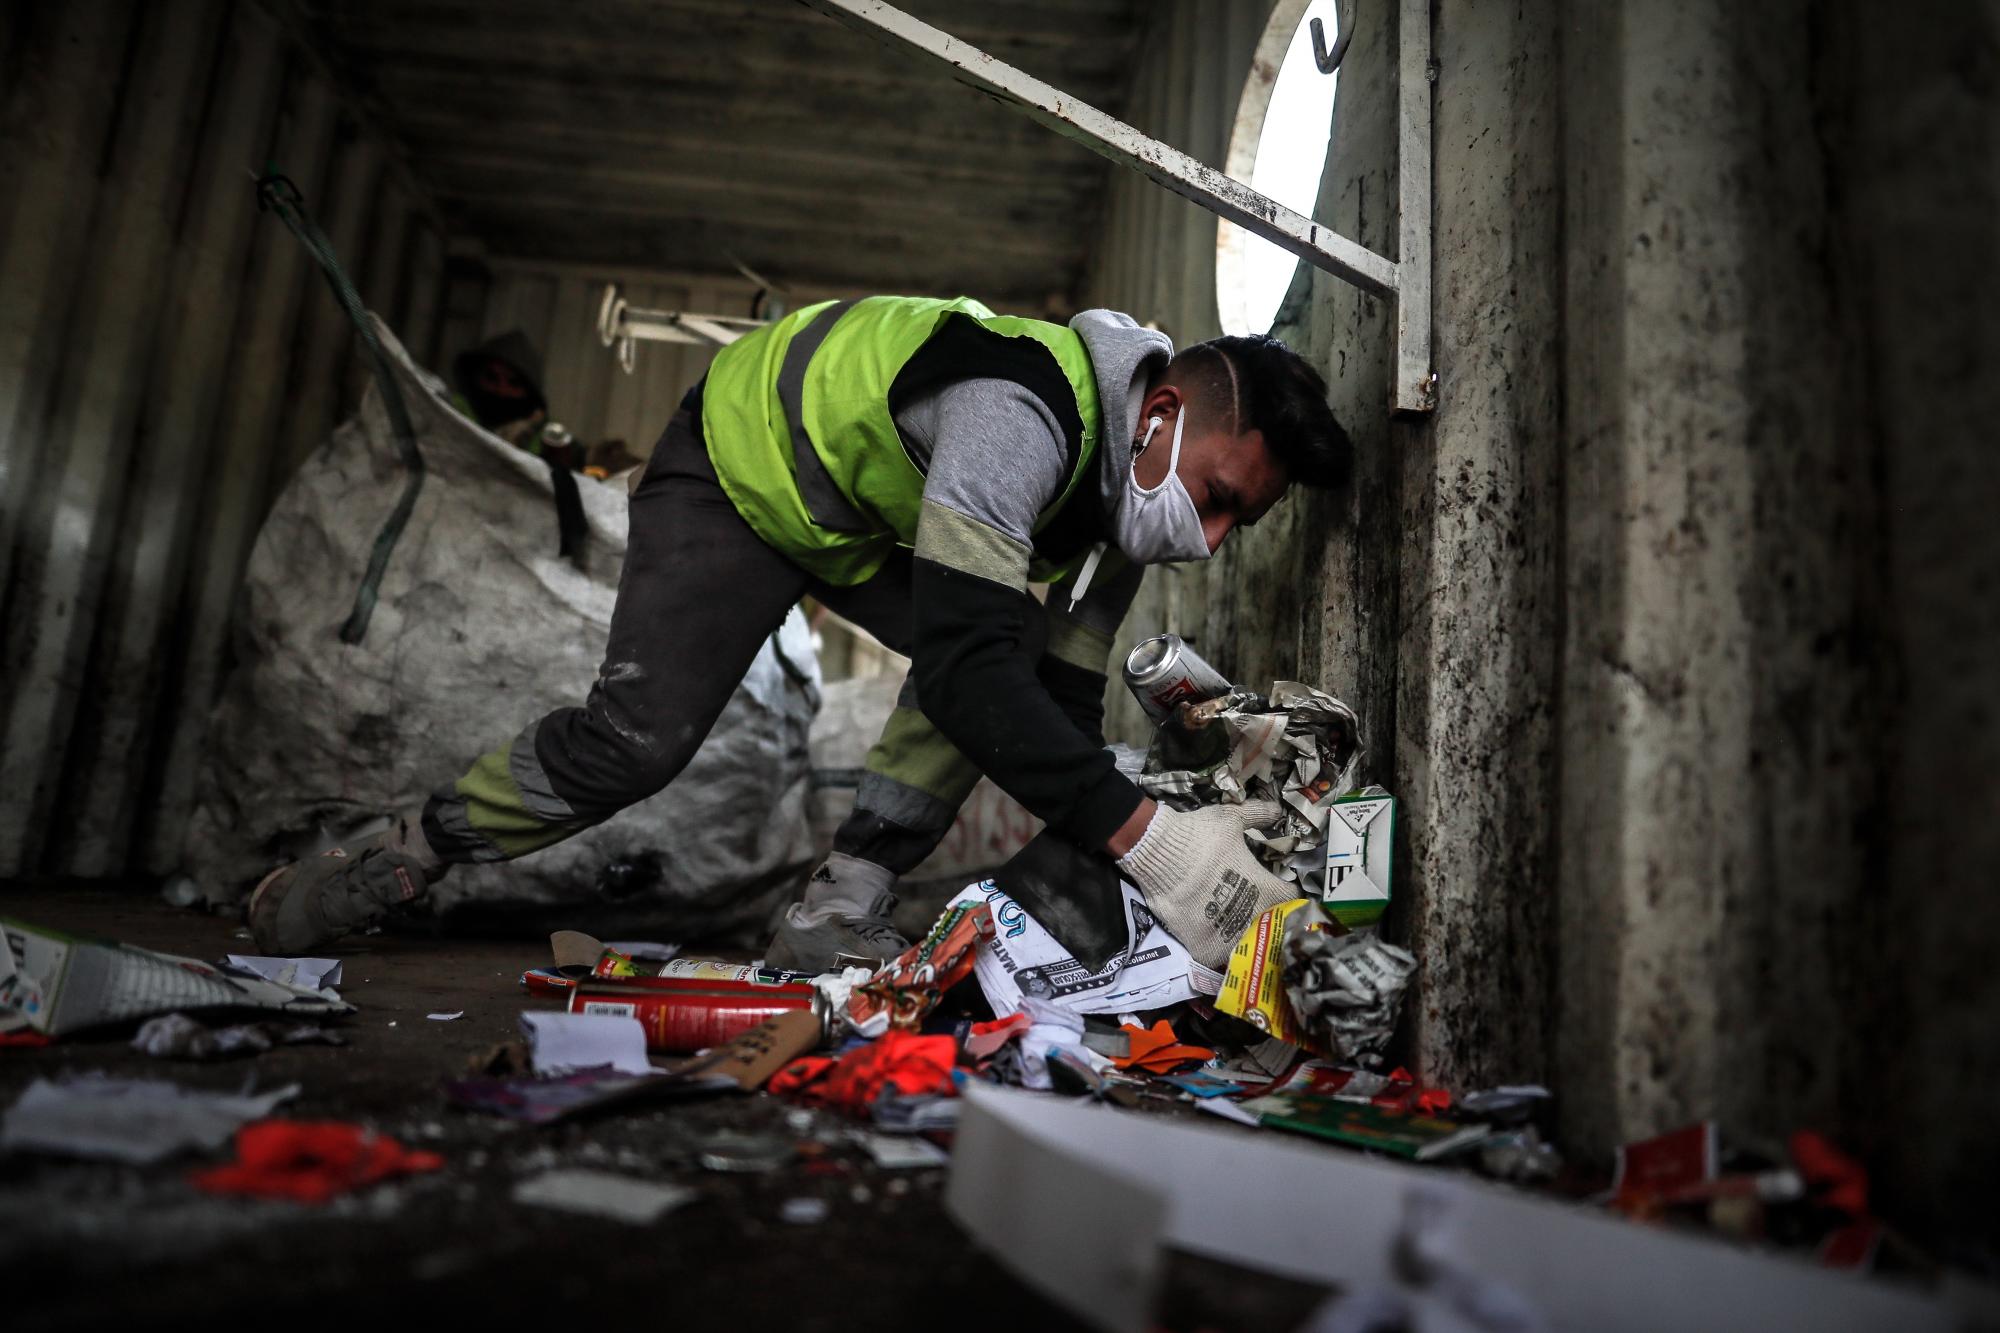 Un miembro de la cooperativa 18 de abril busca materiales en un contenedor de basura de la ciudad de Buenos Aires (EFE/ Juan Ignacio Roncoroni)